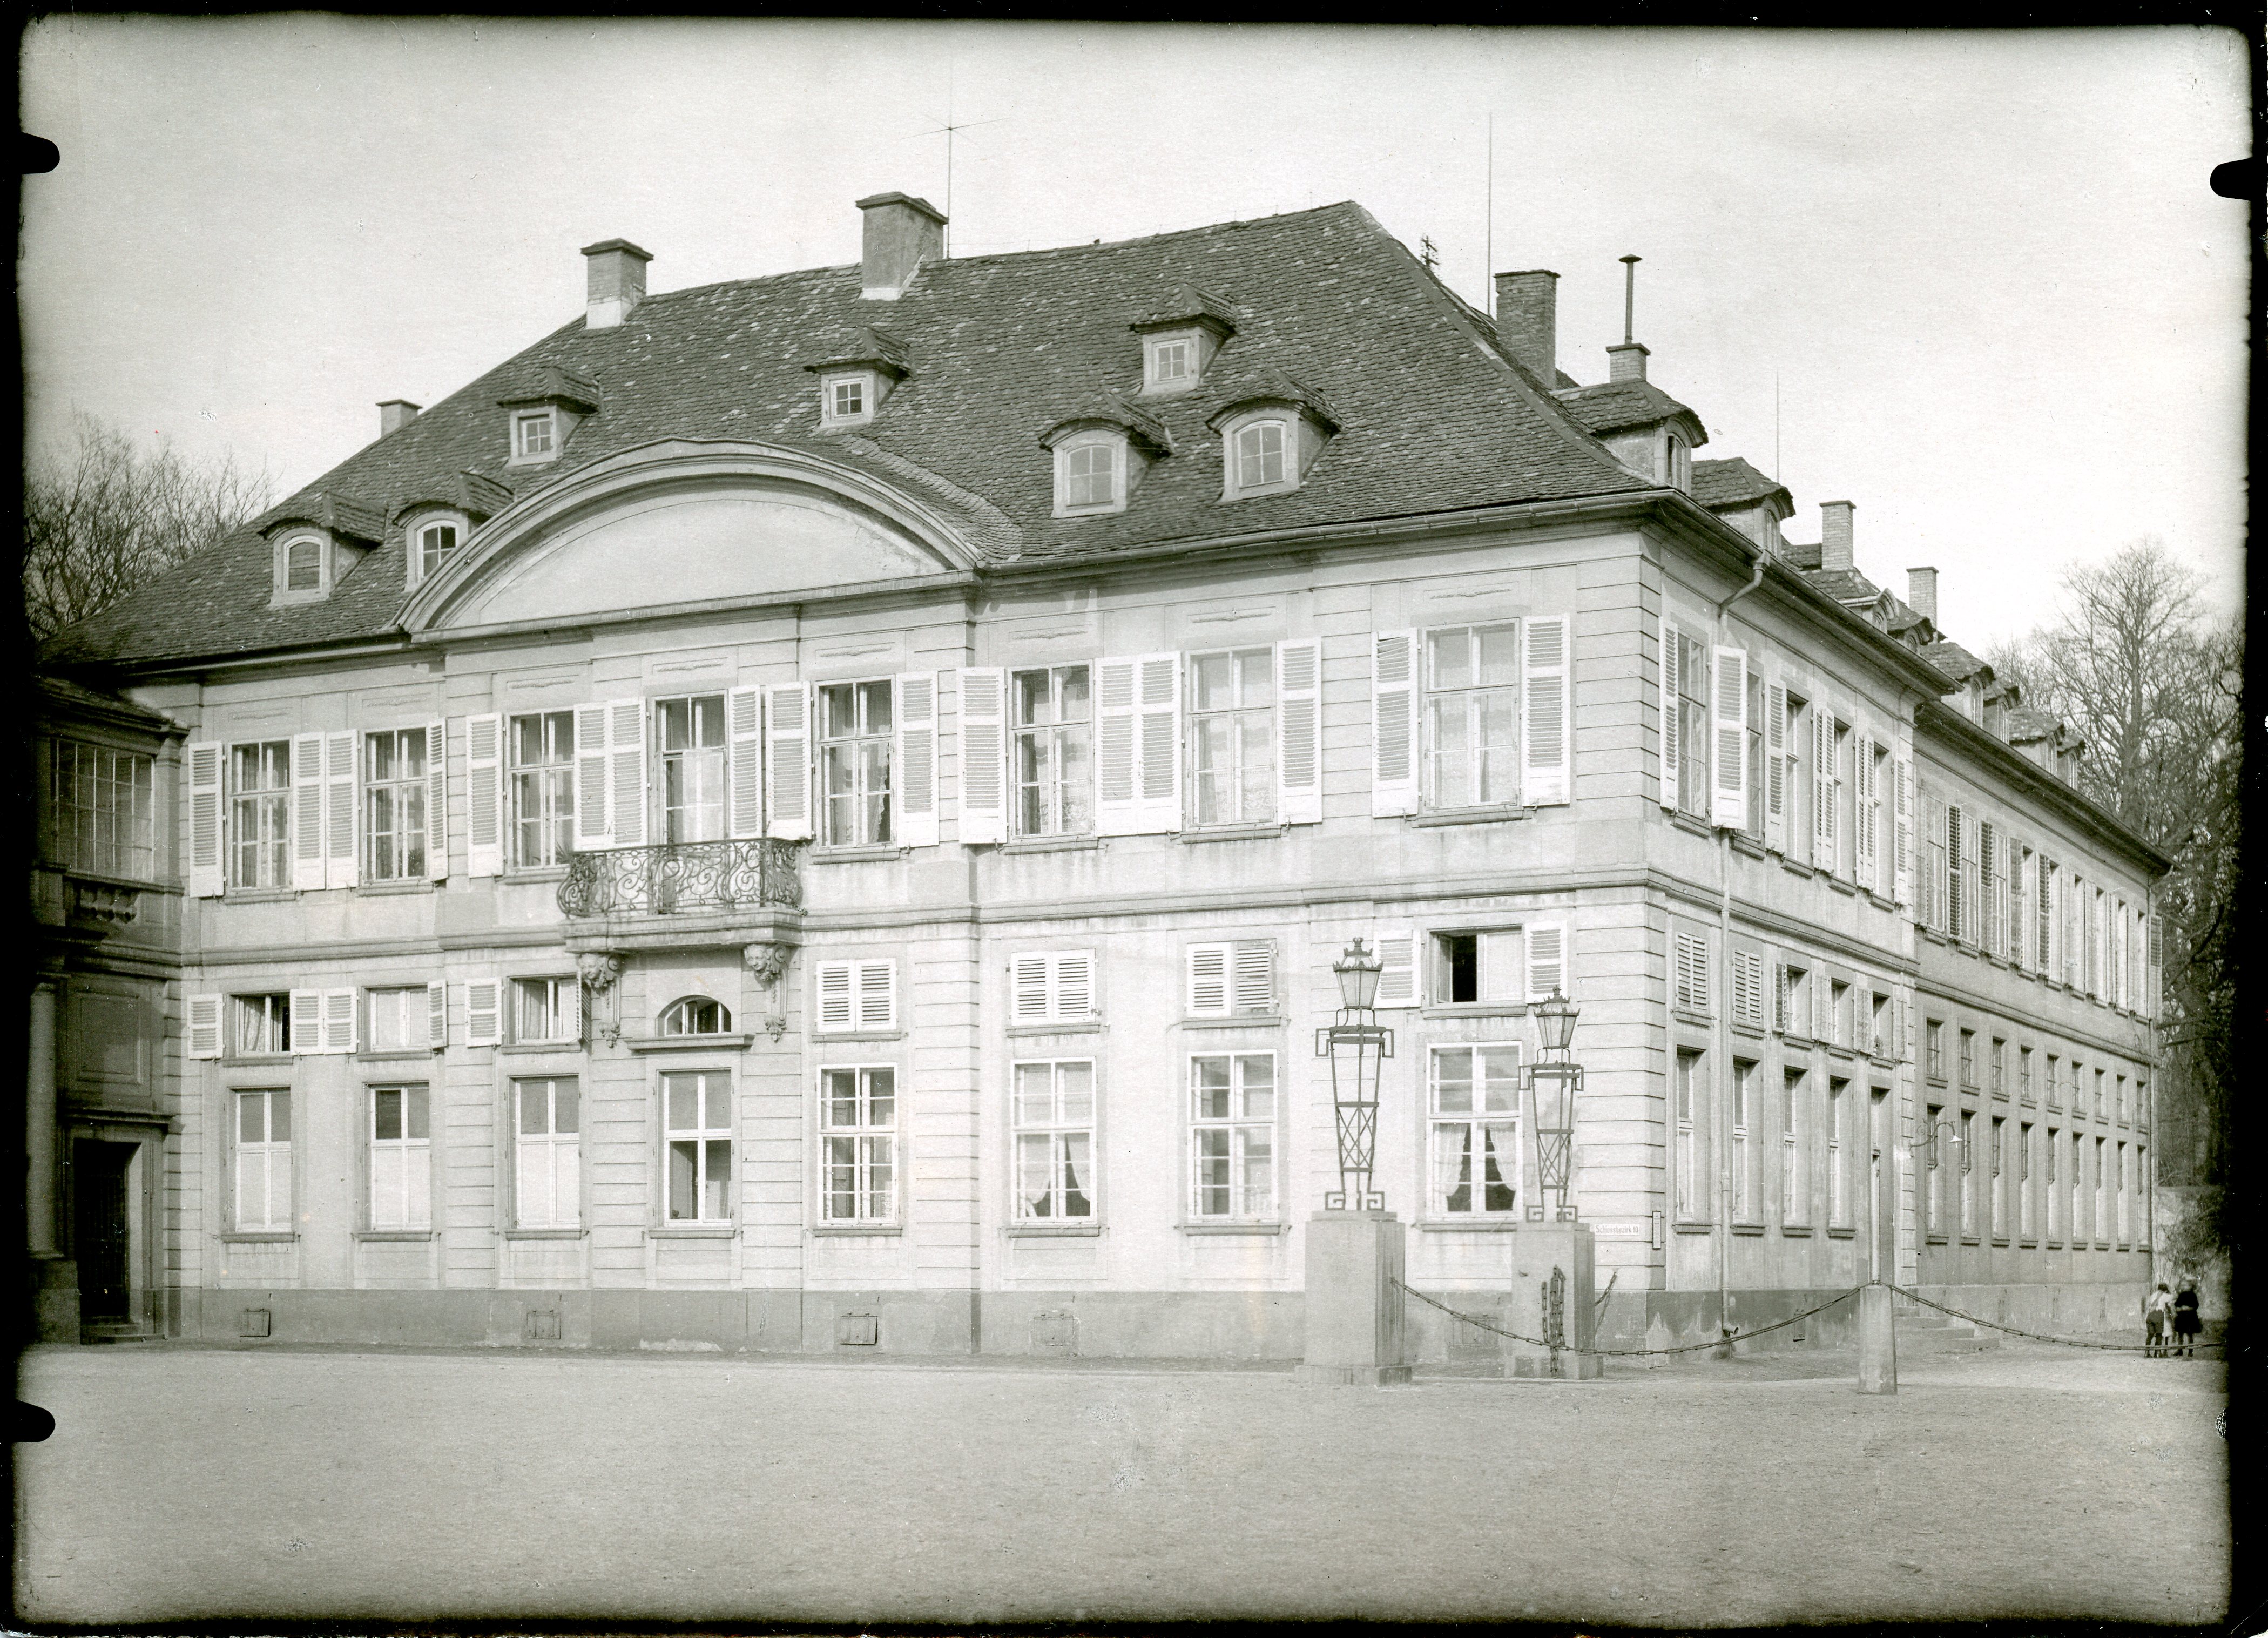 Schwarz-weiß Fotografie des östlichen Nebengebäude des Schlosses.